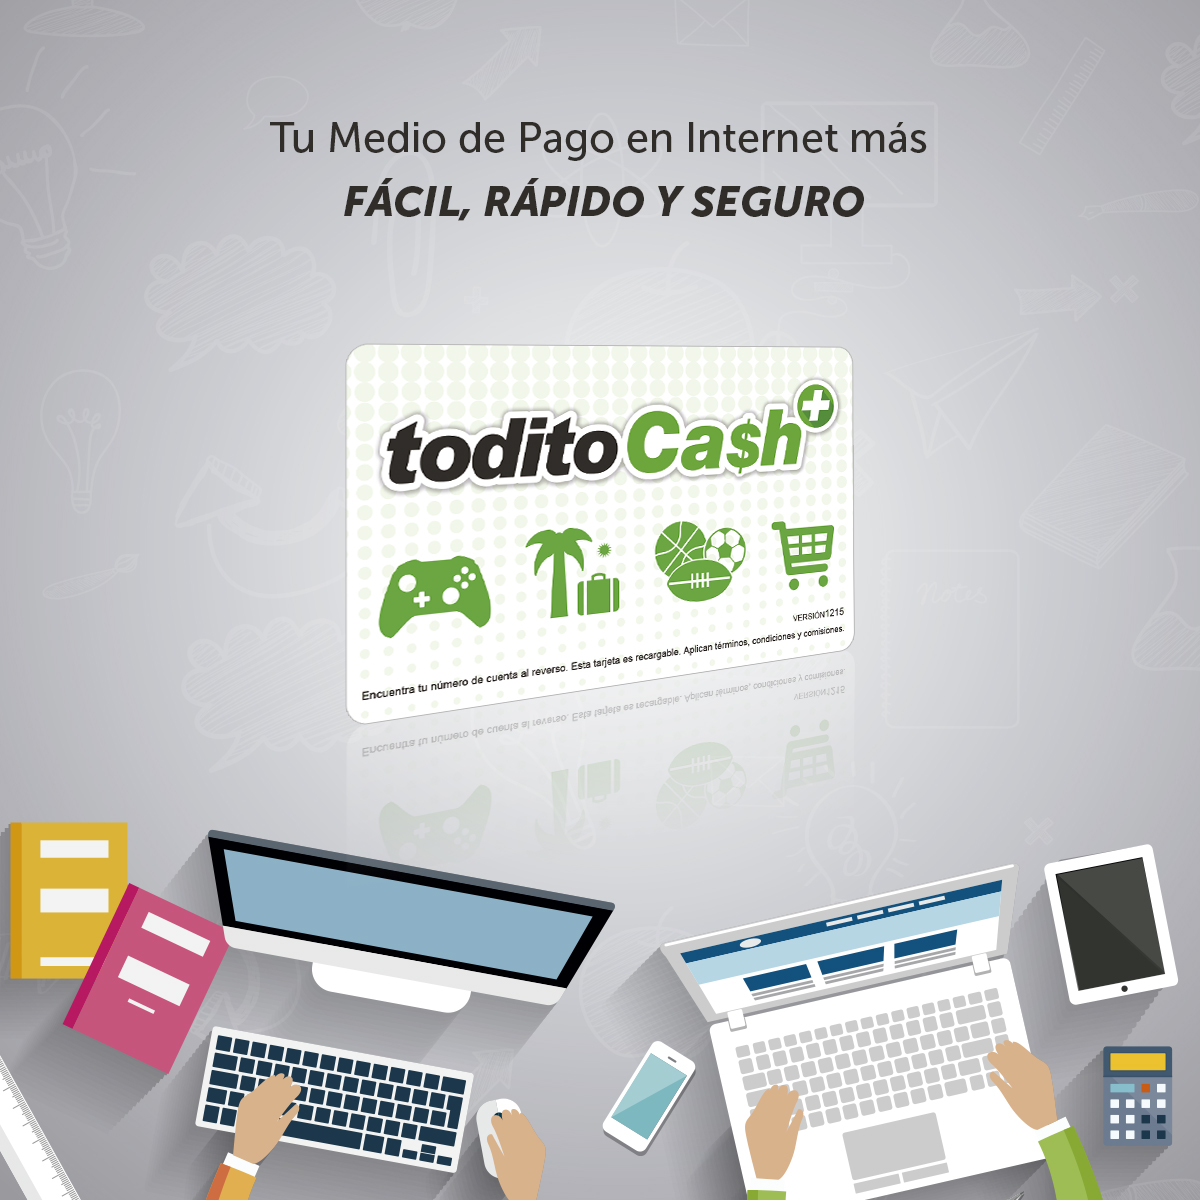 Blog Oficial Todito Cash Donde Puedo Obtener Mi Tarjeta Todito Cash